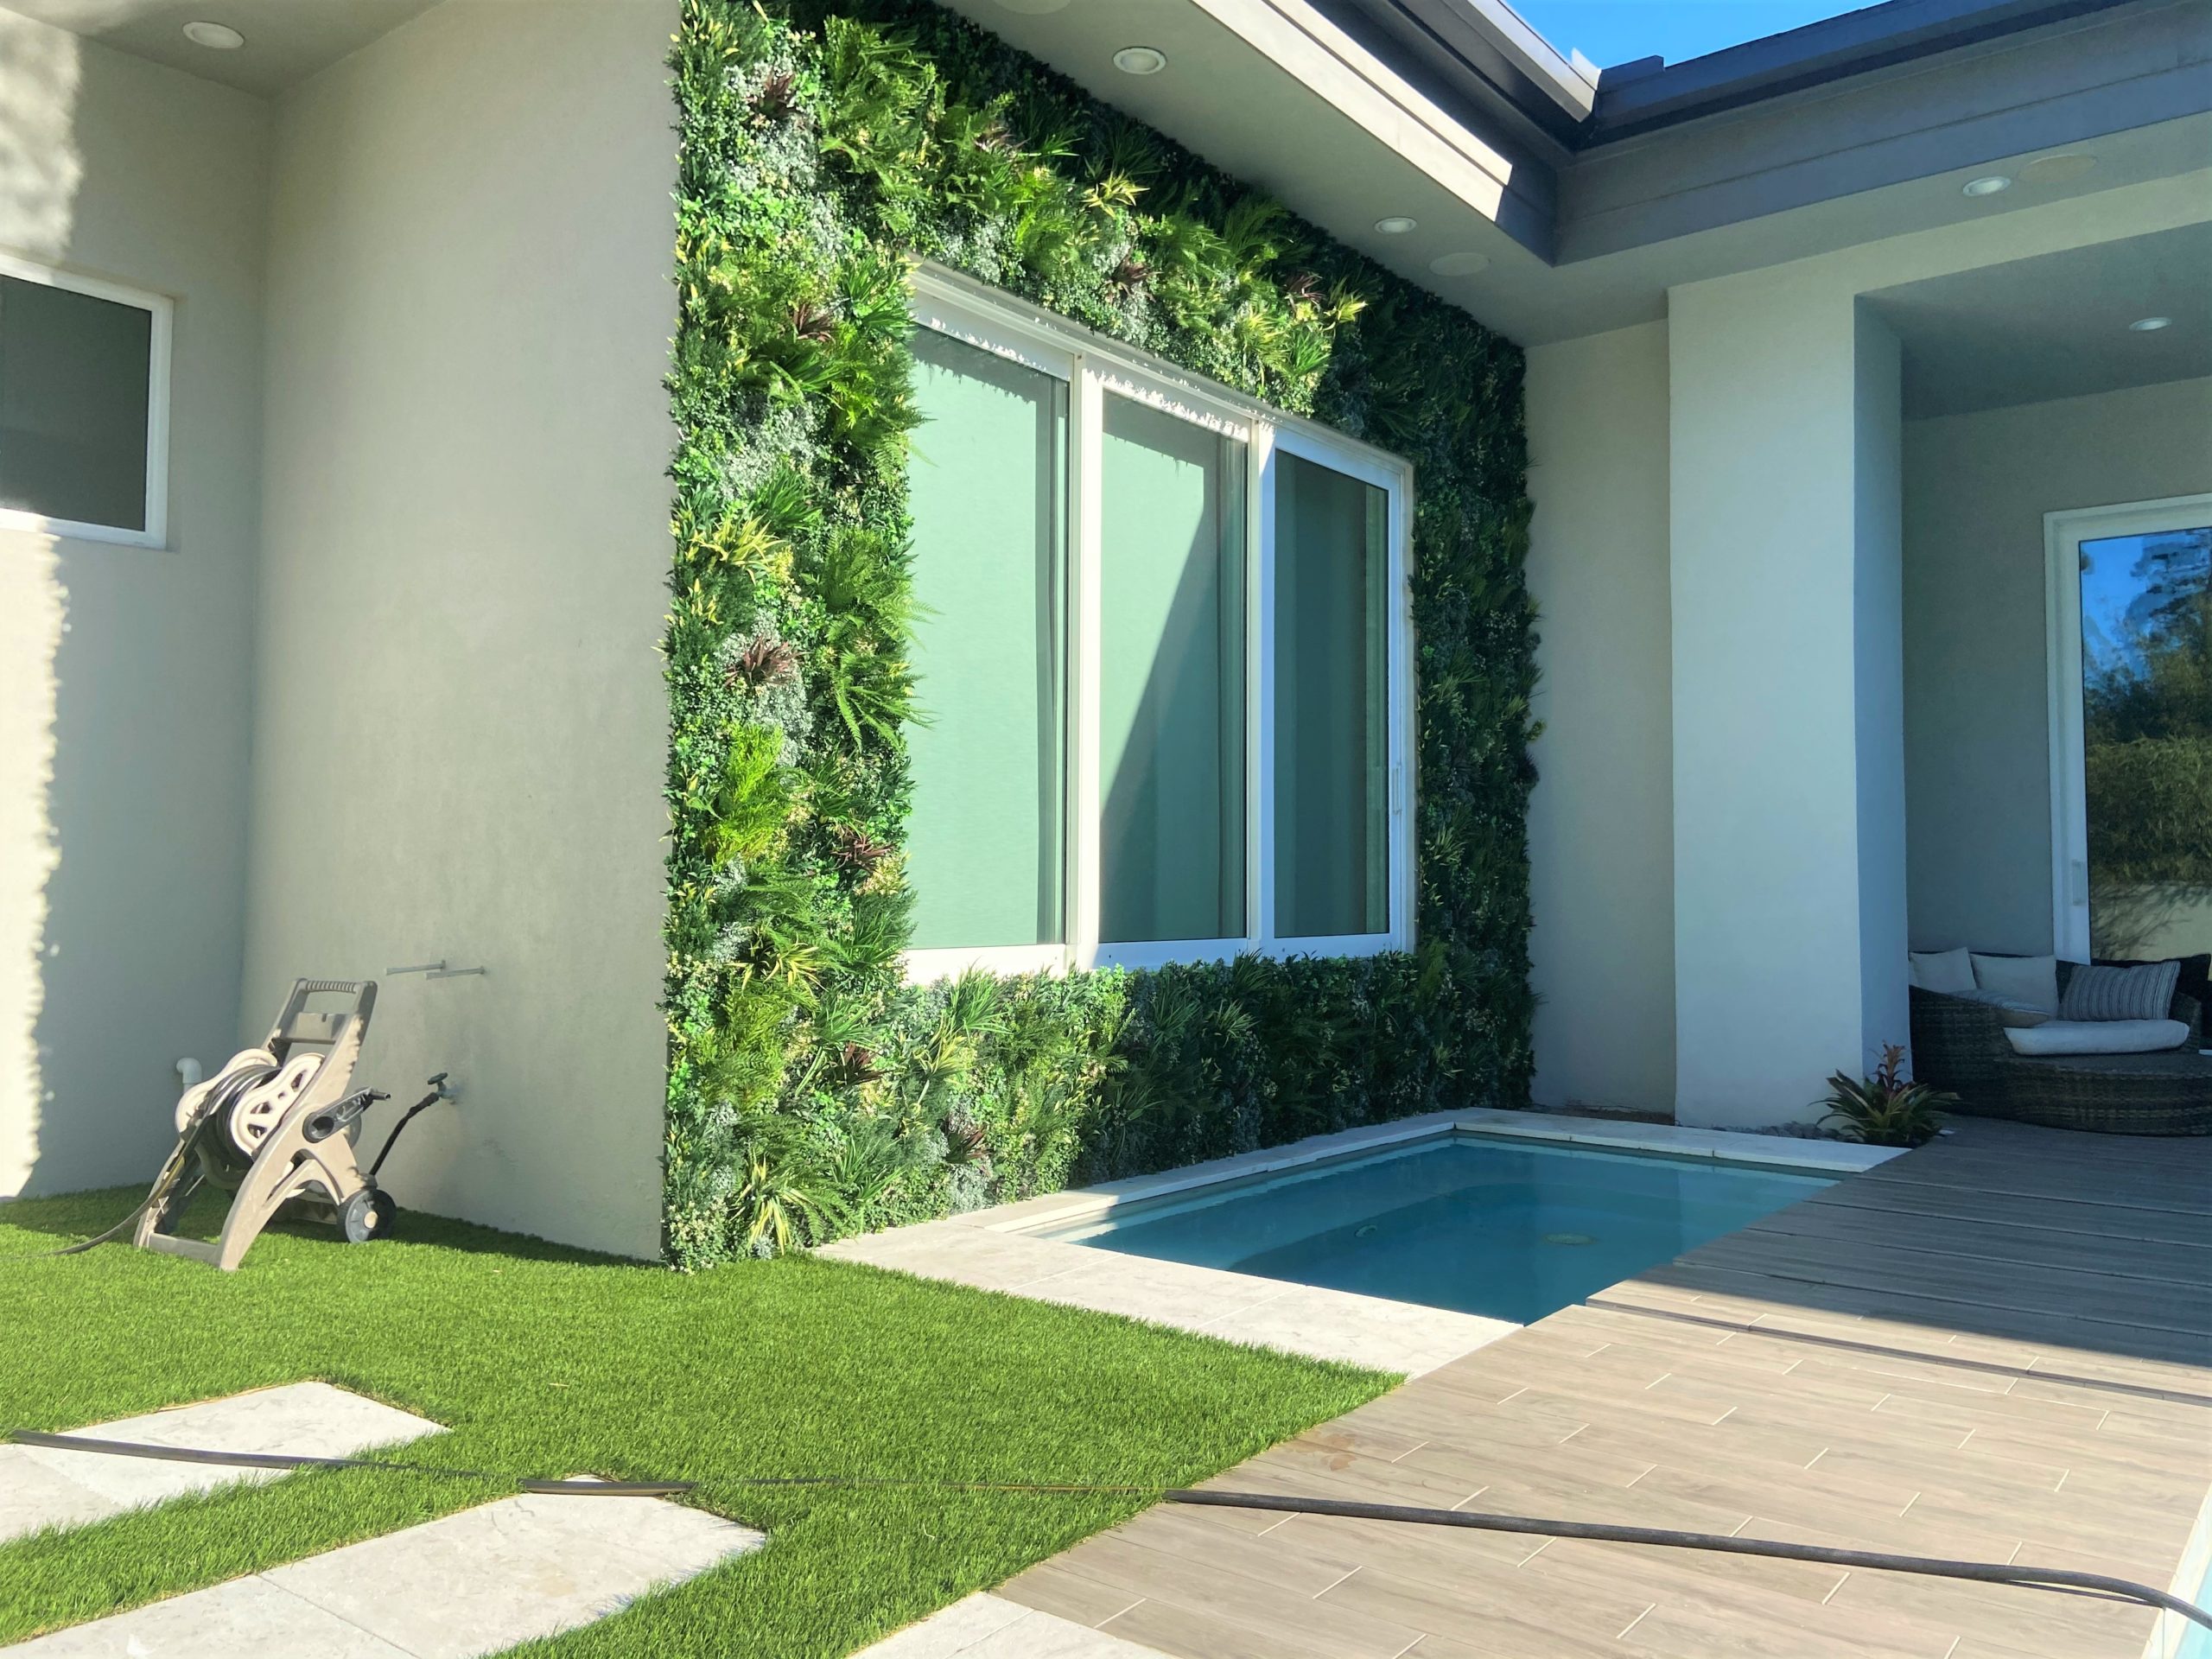 An Artificial Green Wall Installation in a backyard in Orlando Florida